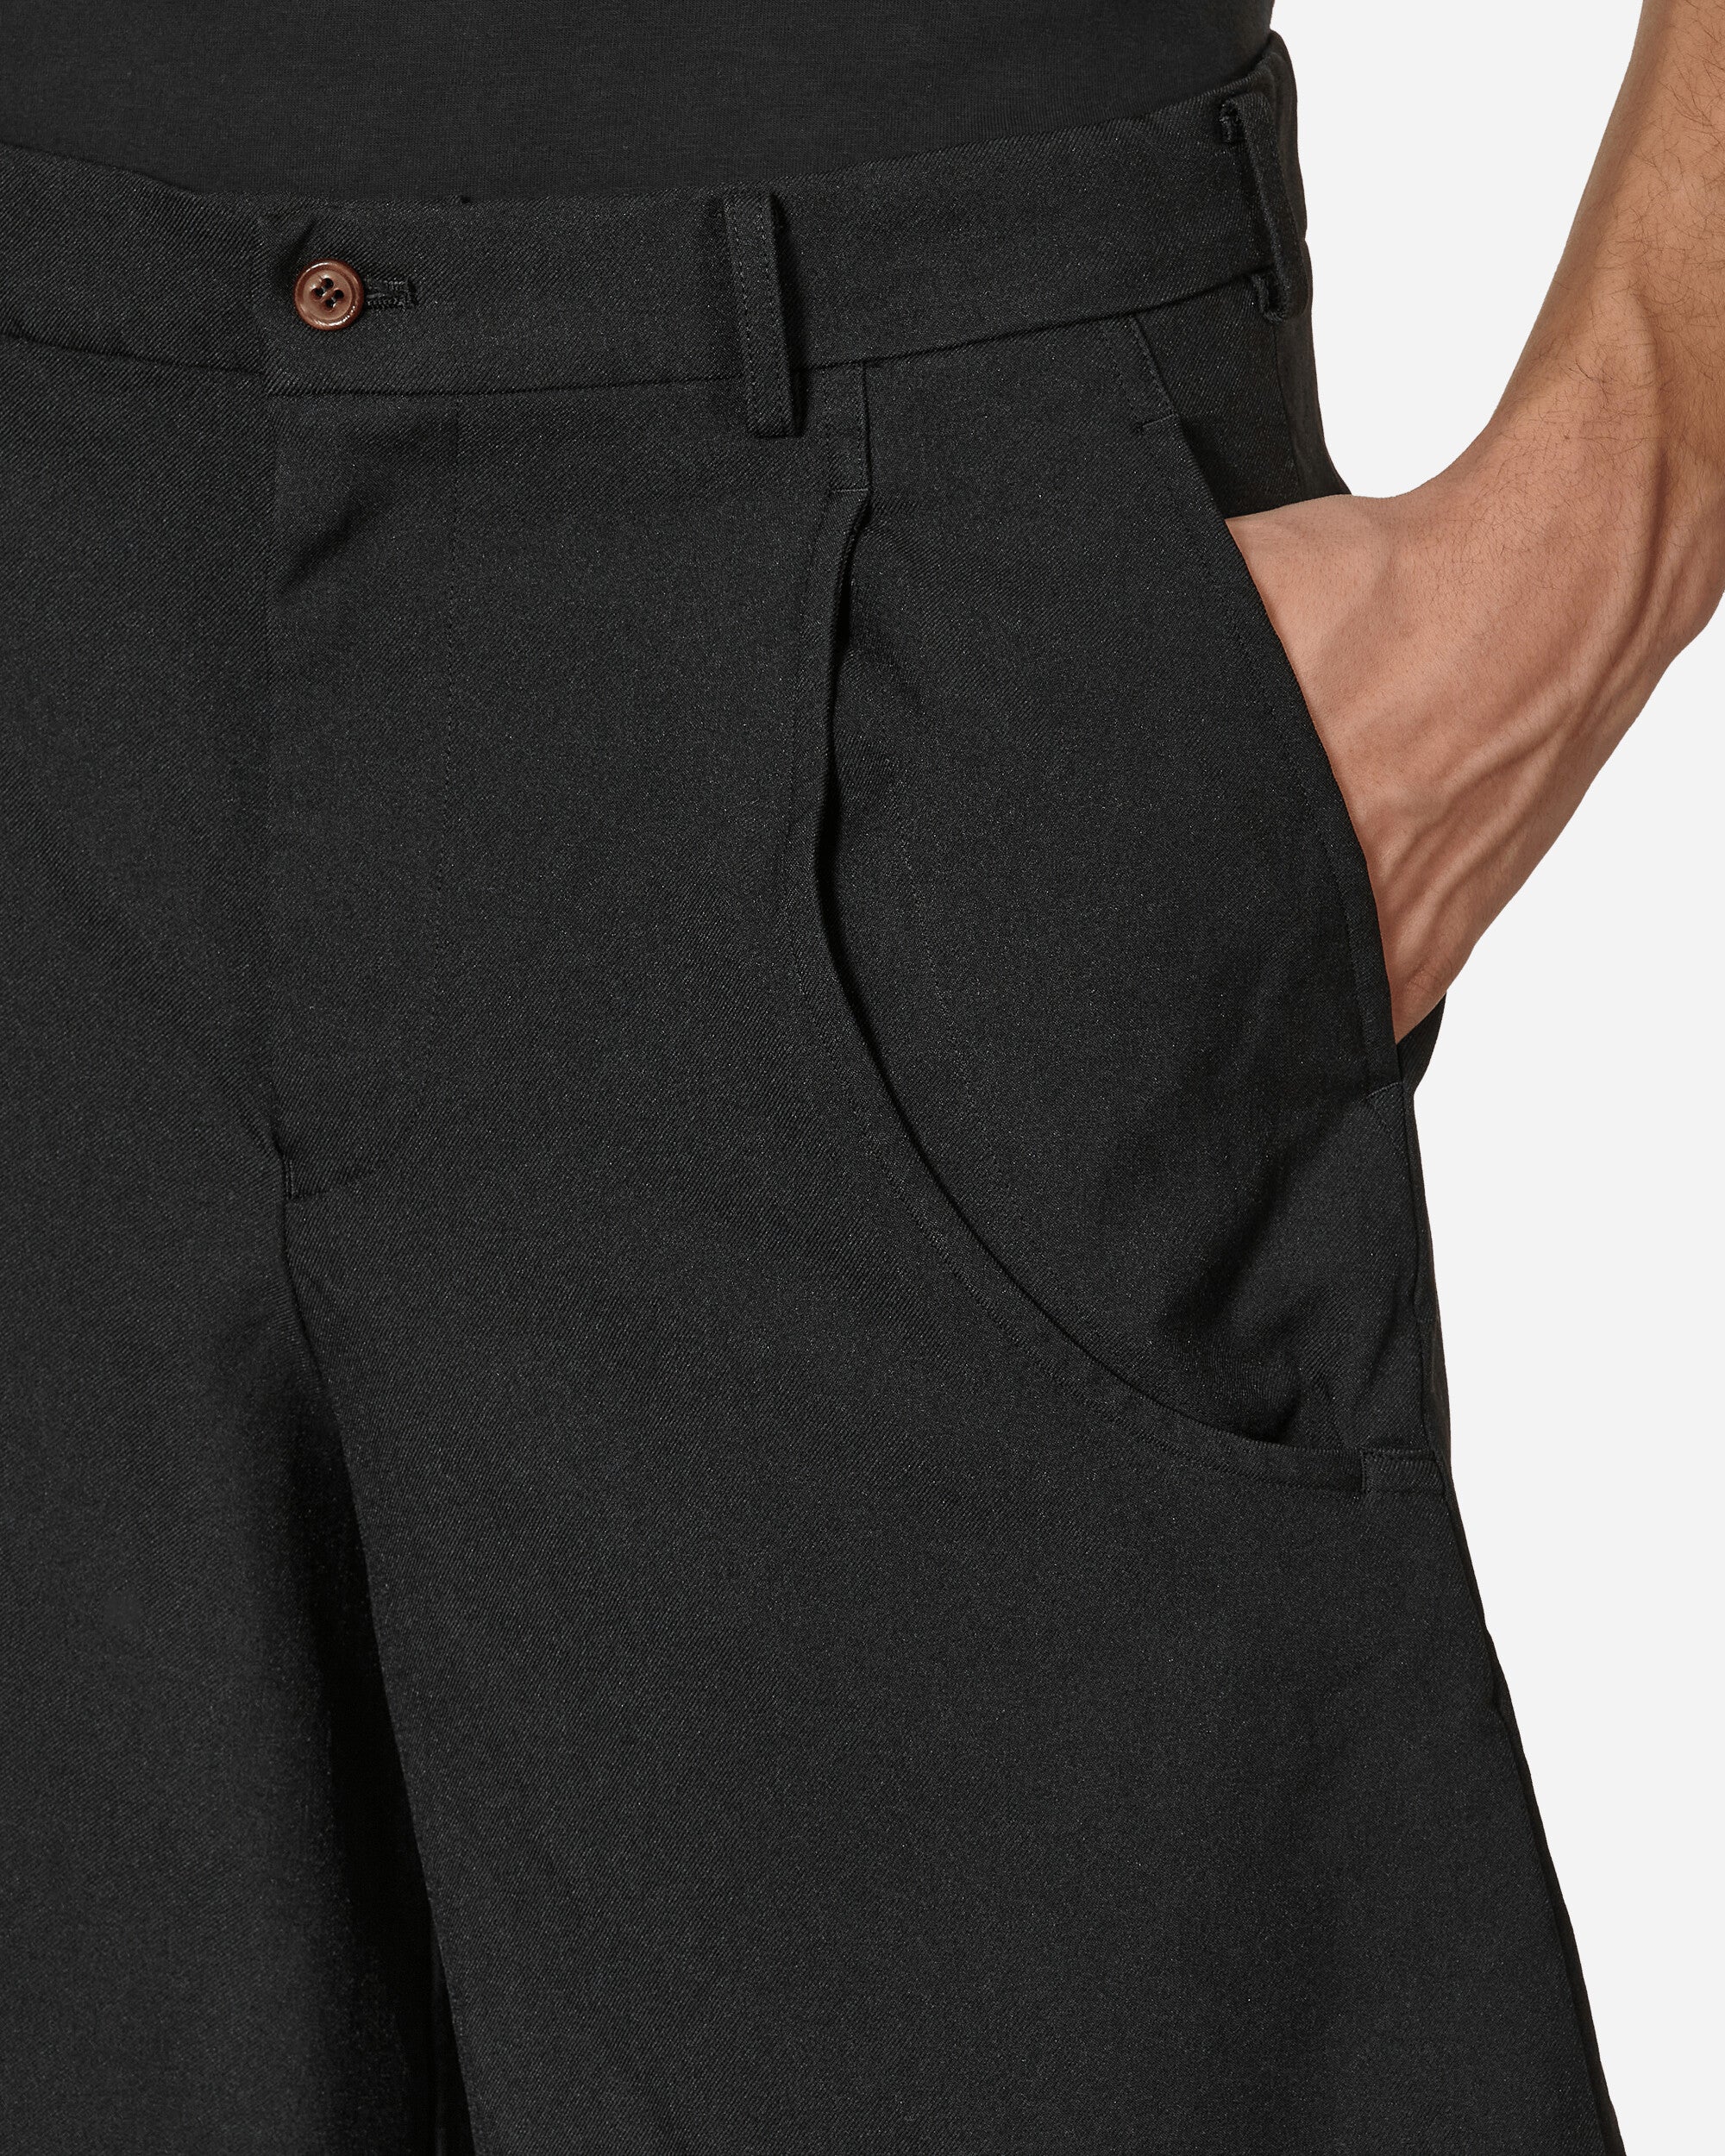 Comme Des Garçons Black Pants Black Pants Trousers 1K-P006-S23 1